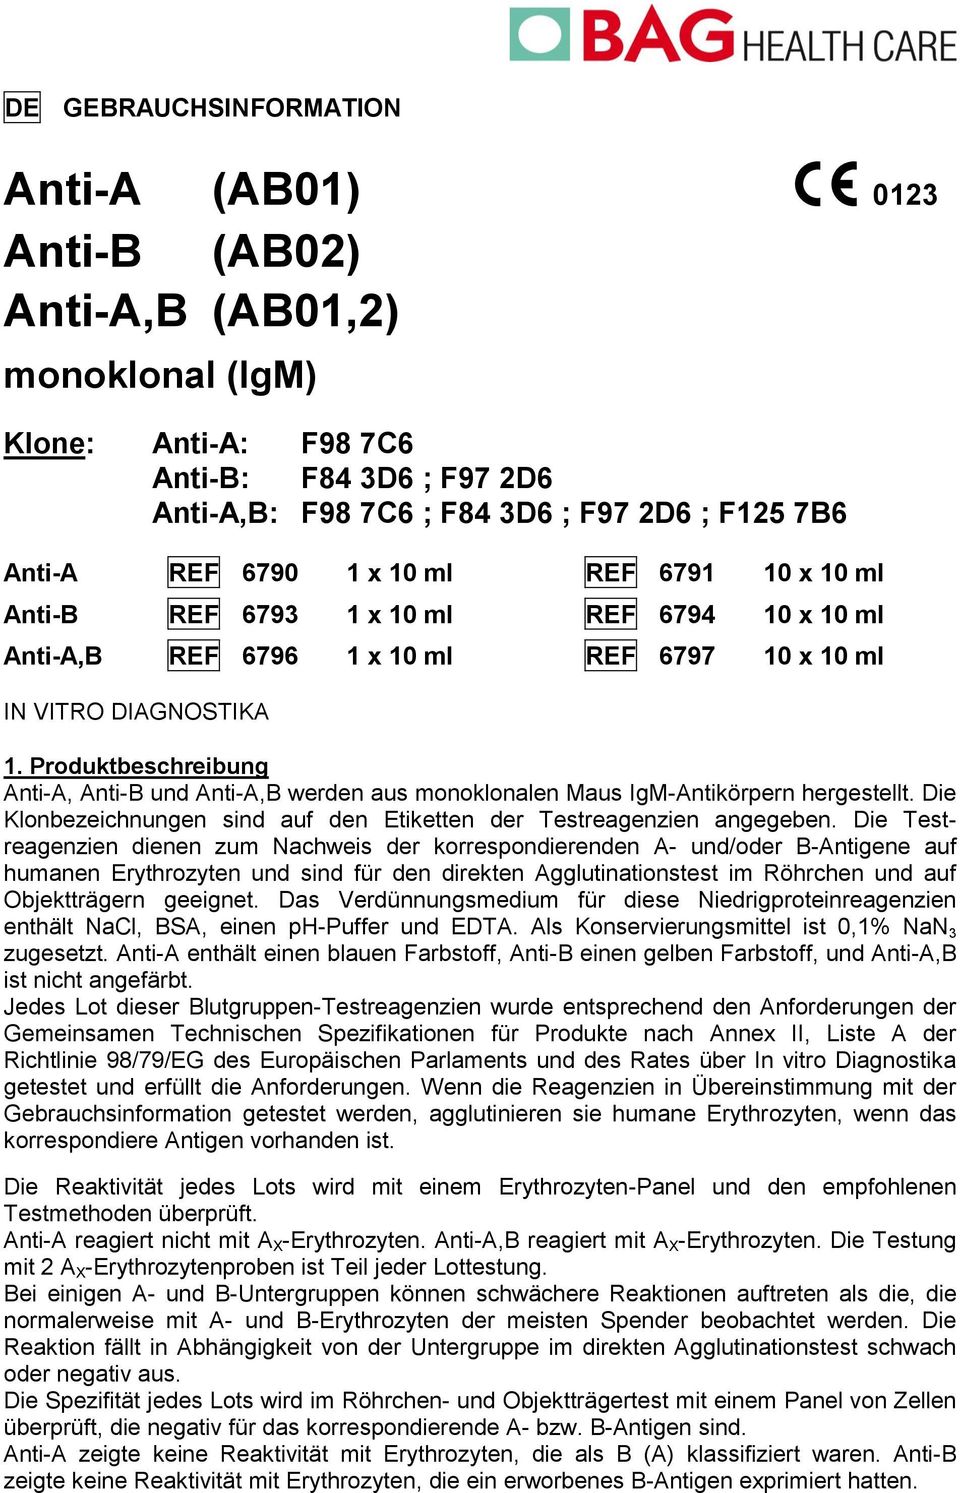 Produktbeschreibung AntiA, AntiB und AntiA,B werden aus monoklonalen Maus IgMAntikörpern hergestellt. Die Klonbezeichnungen sind auf den Etiketten der Testreagenzien angegeben.